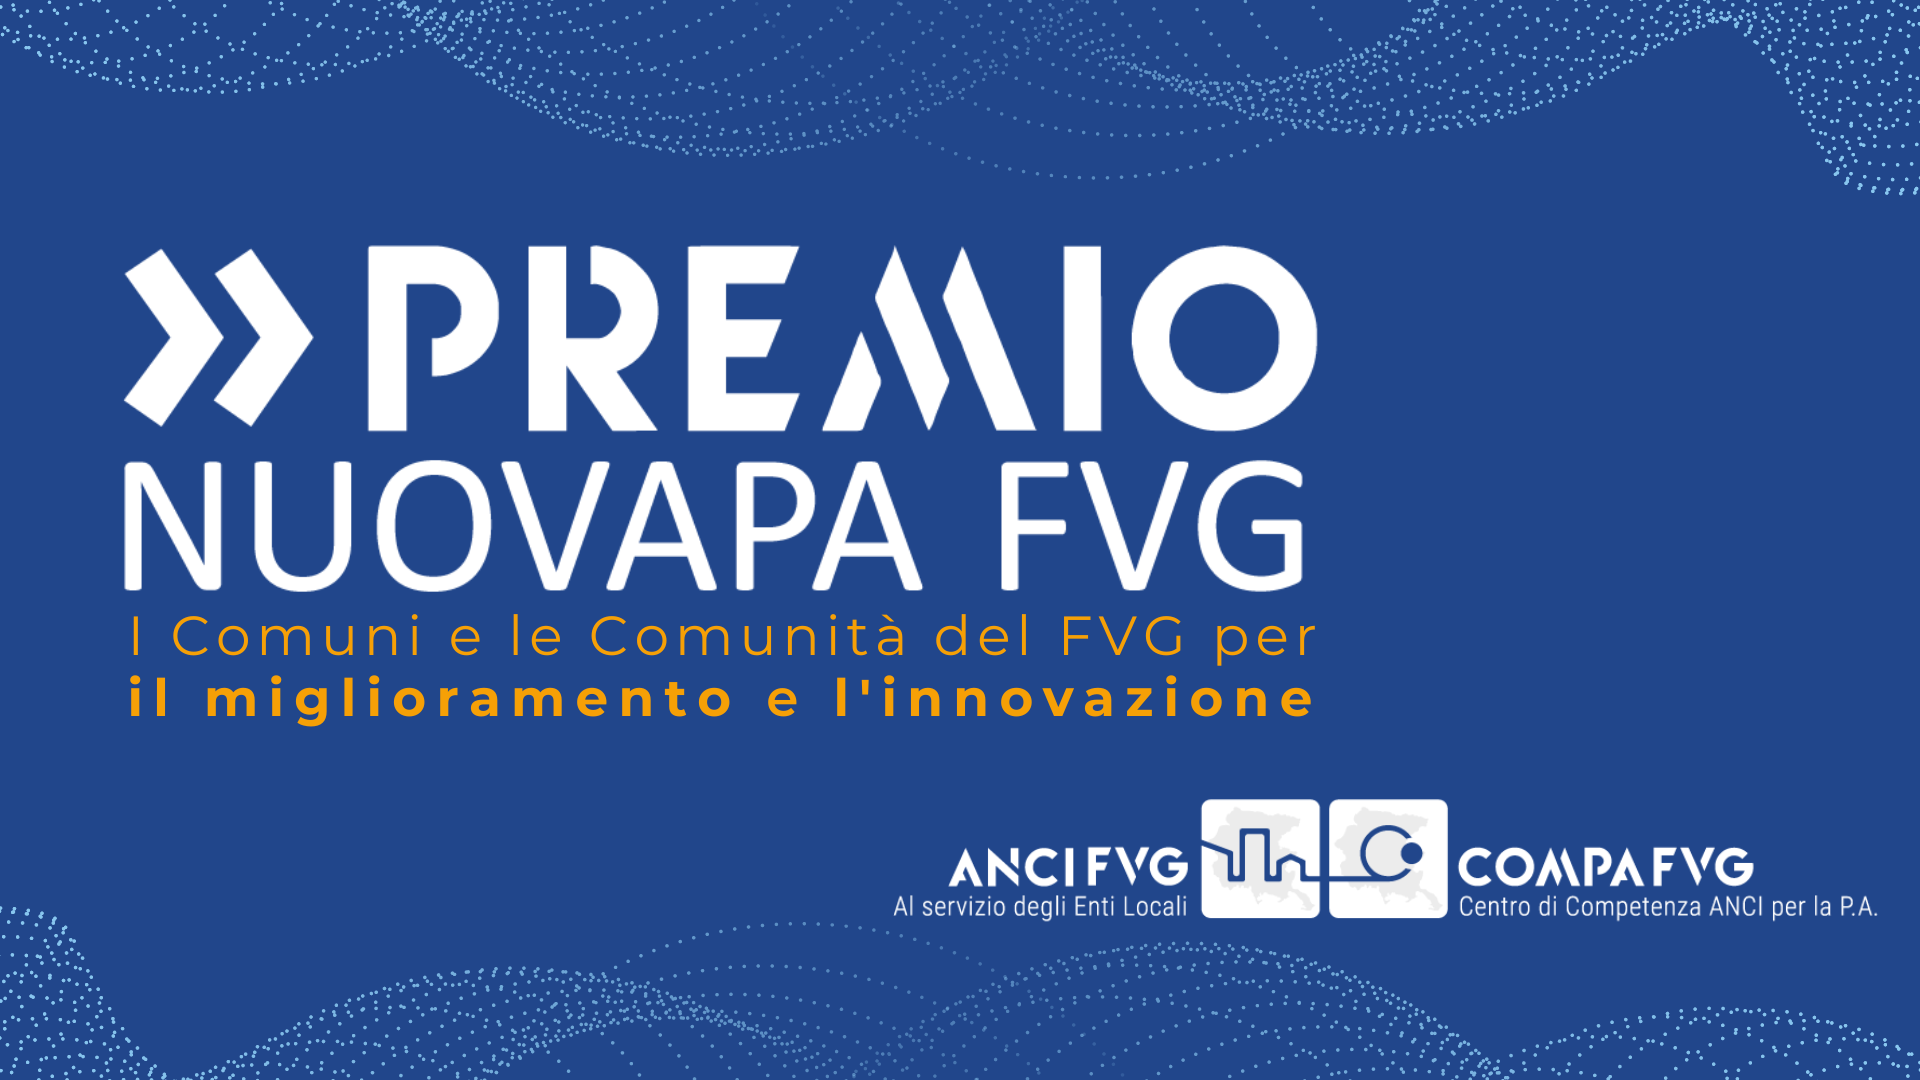 Al momento stai visualizzando Premio NuovaPA FVG